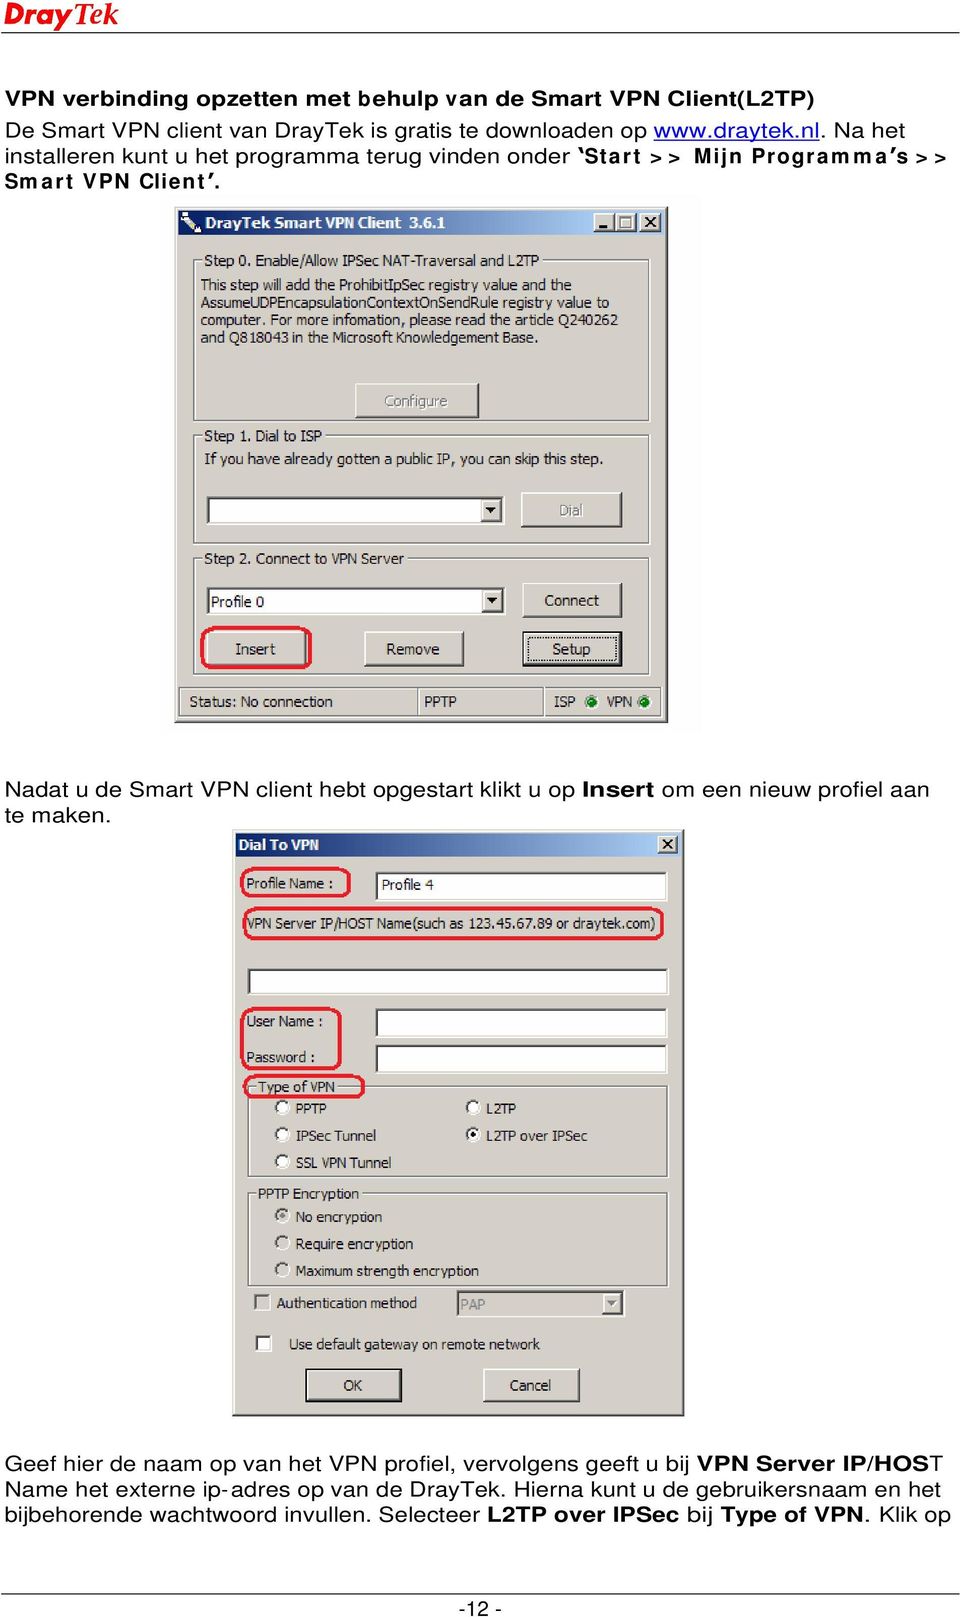 Nadat u de Smart VPN client hebt opgestart klikt u op Insert om een nieuw profiel aan te maken.